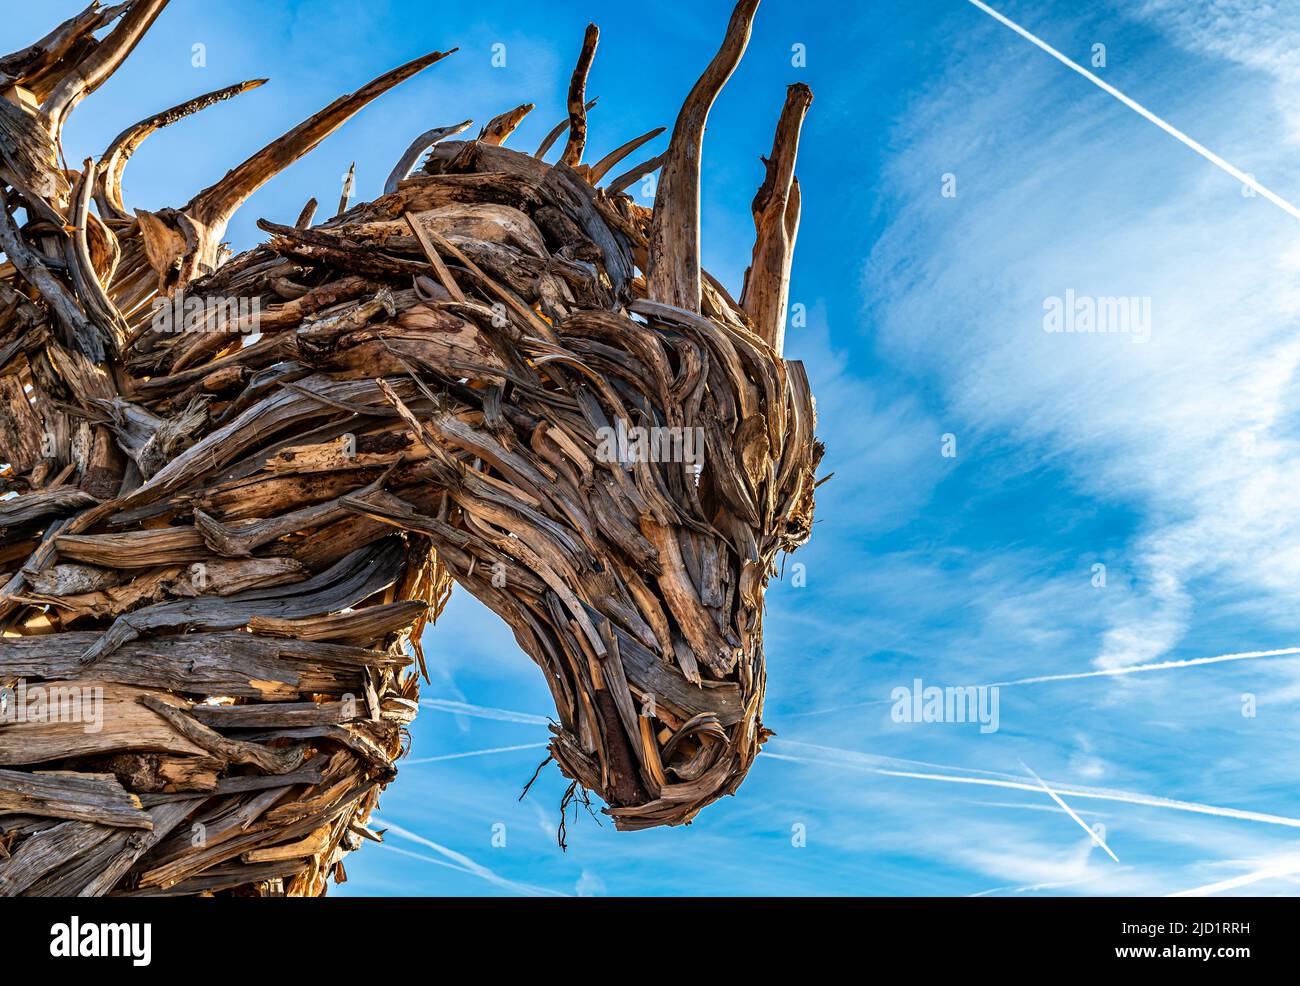 Drago Vaia (Dragón de Vaia). La escultura es obra del artista Marco Martalar. Lavarone, Alpe cimbra, Trentino Alto Adige, norte de Italia. Foto de stock